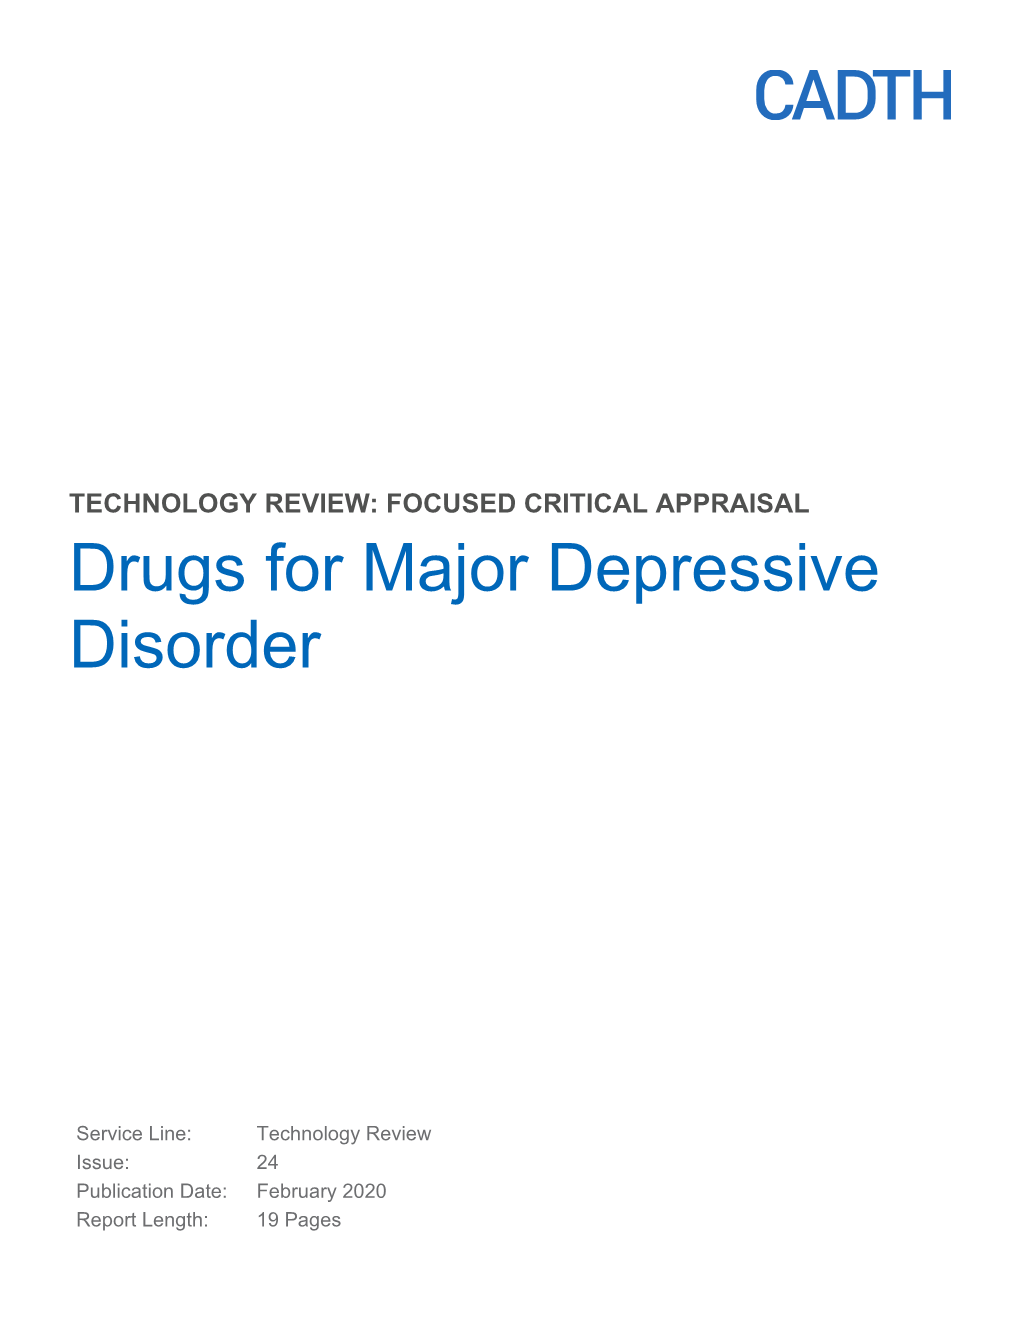 Drugs for Major Depressive Disorder